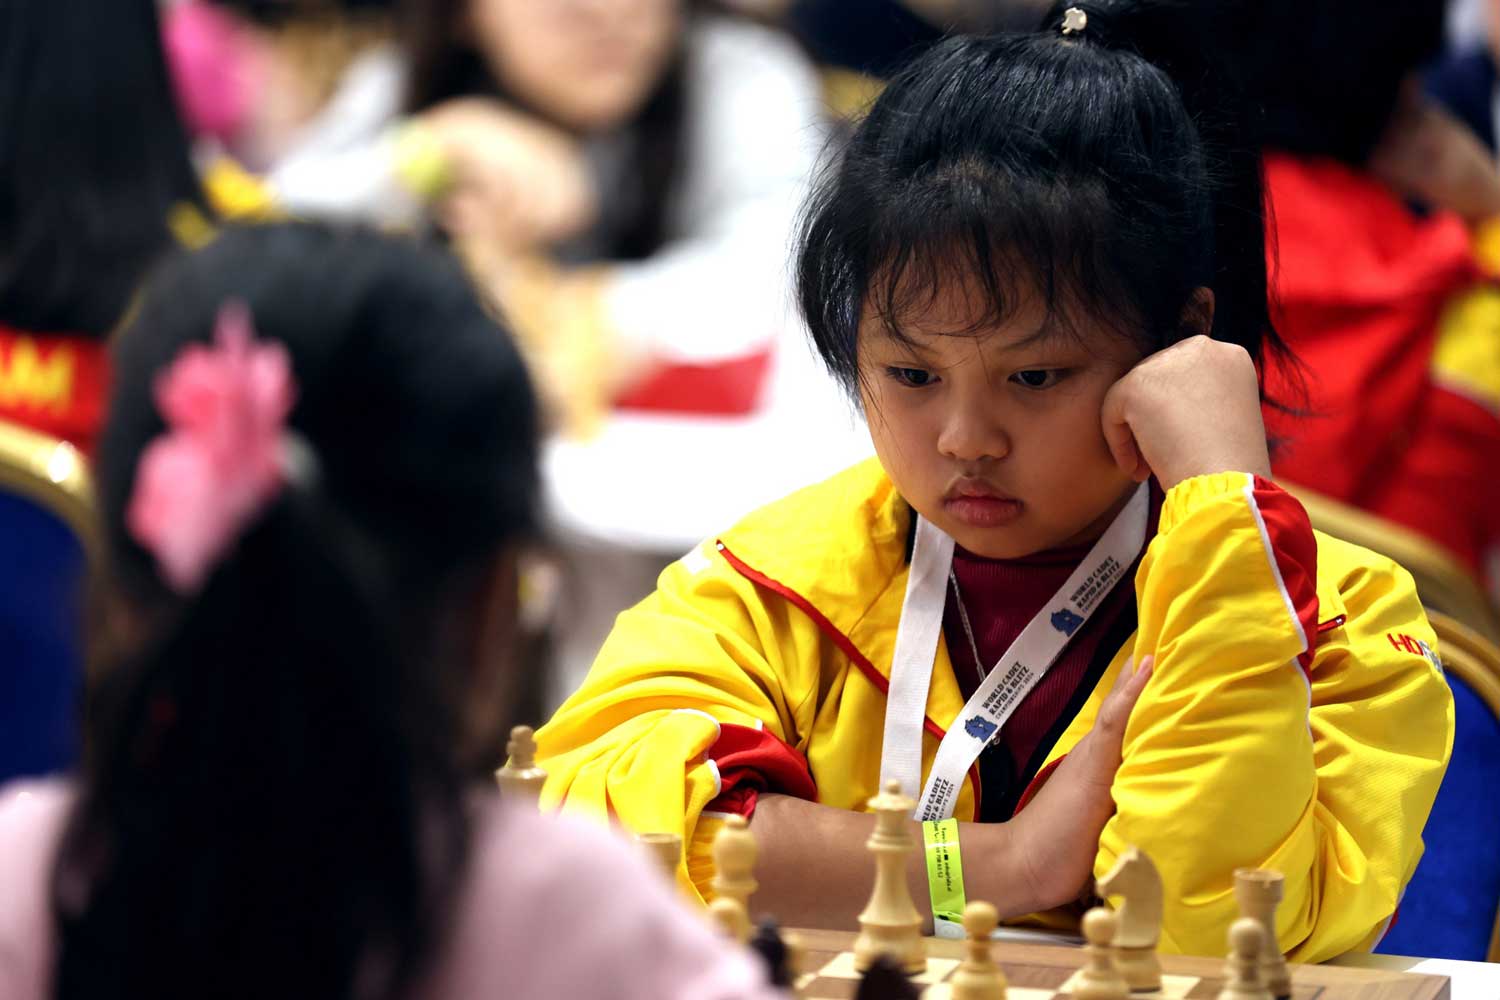 世界象棋快棋和闪电战锦标赛 U8、U10、U12 – 越南获得 1 金、2 银和 1 铜